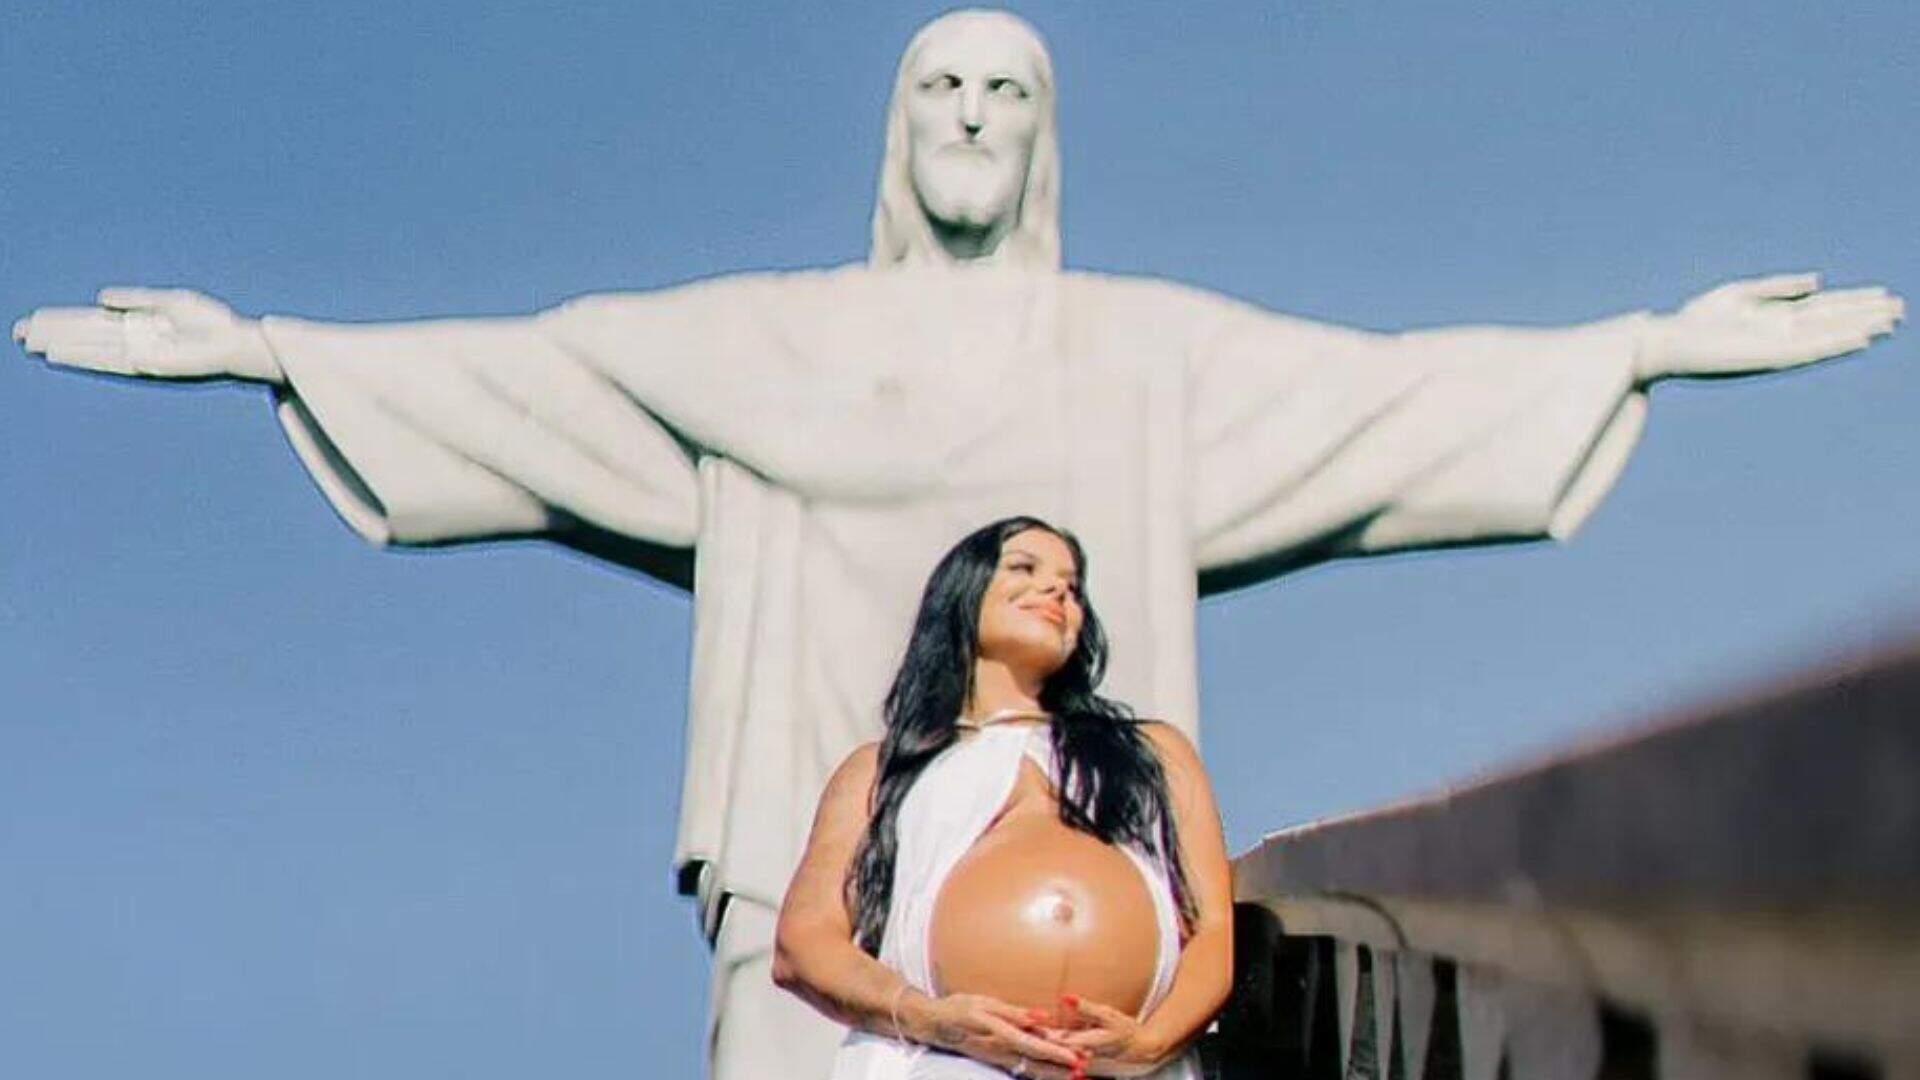 Evelyn Regly celebra 8 meses de gravidez com ensaio no Cristo Redentor: “Estou orgulhosa” - Metropolitana FM